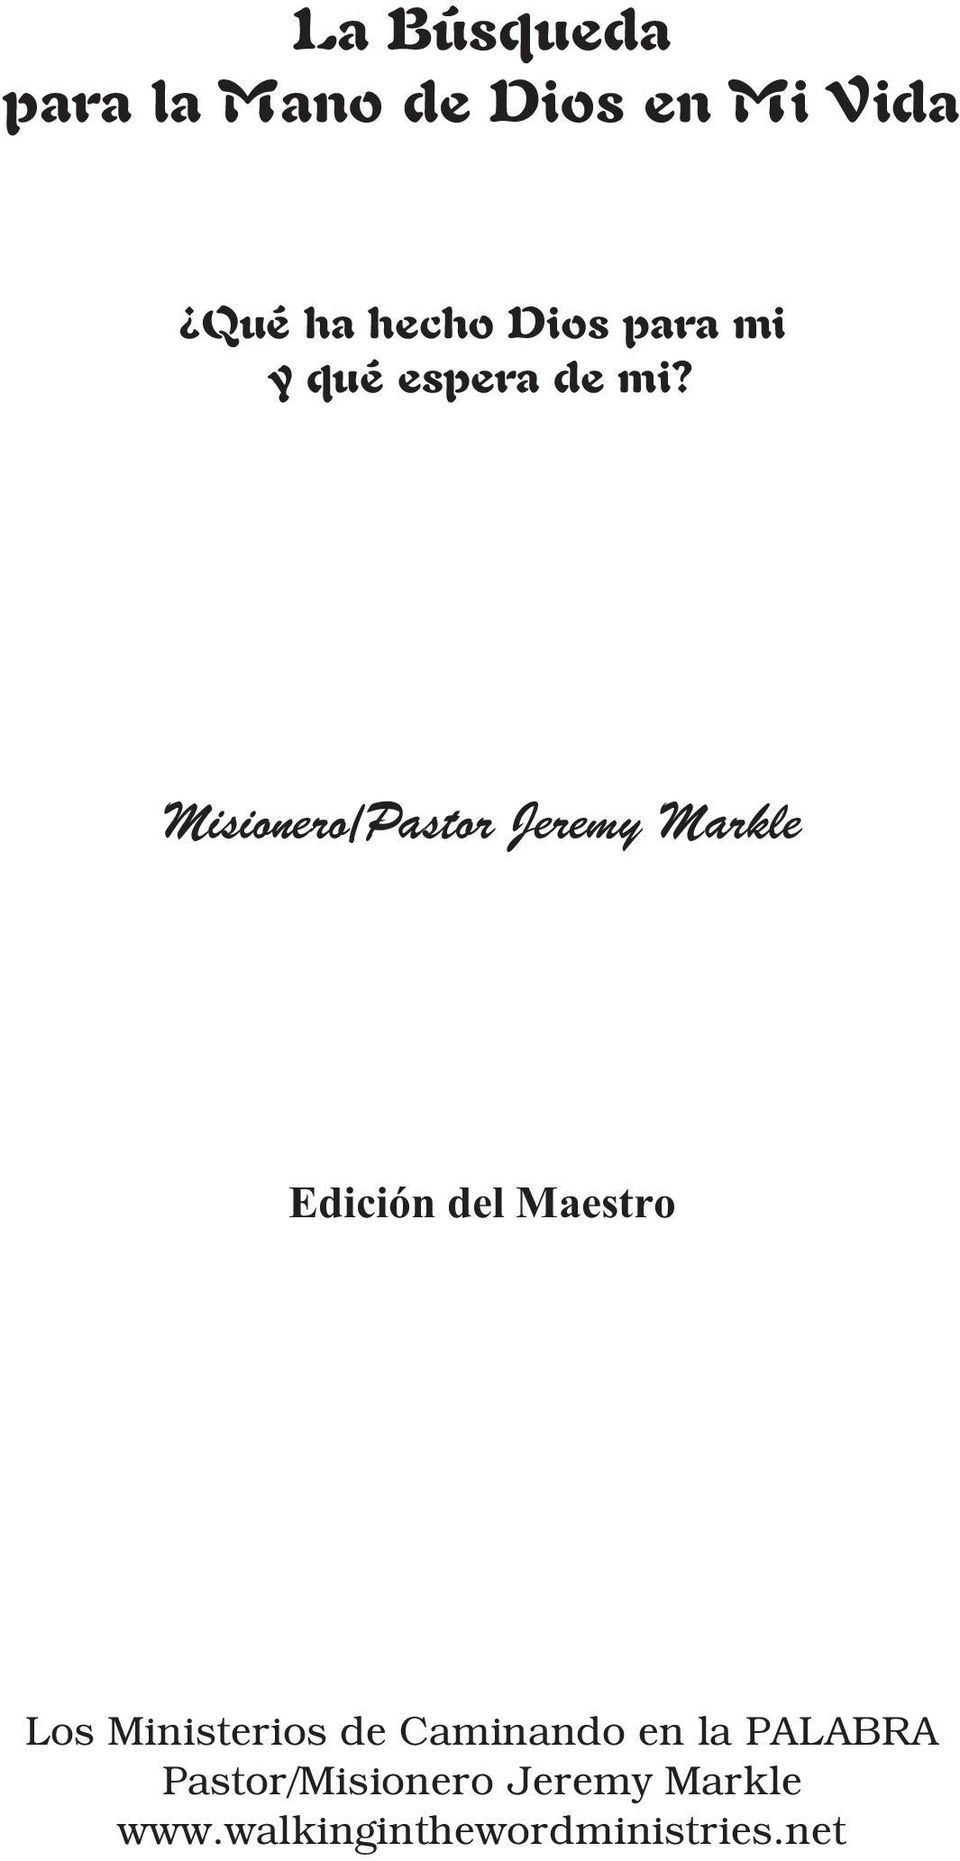 Misionero/Pastor Jeremy Markle Edición del Maestro Los